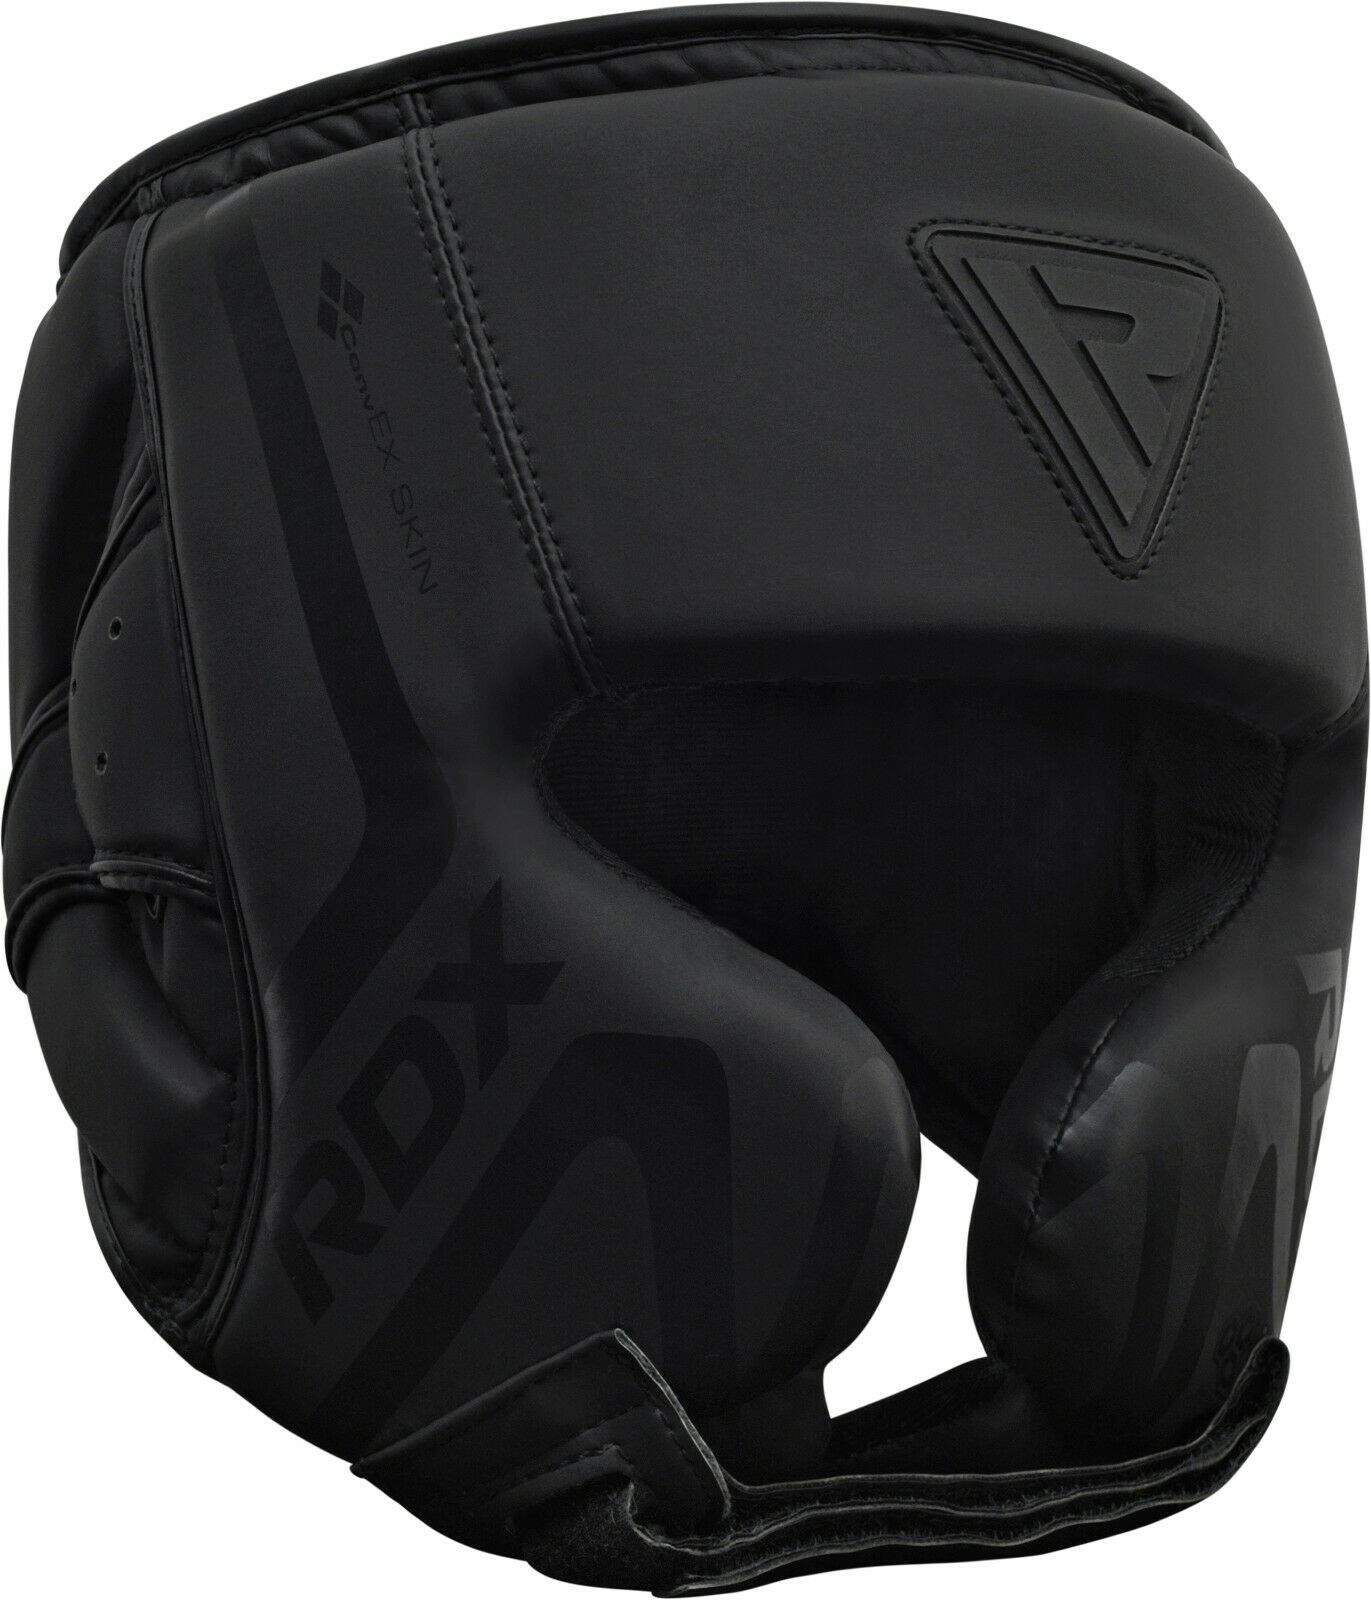 Rdx Headgear Mma Helmet Protector Kick Boxing Head Guard Martial Arts Sparring